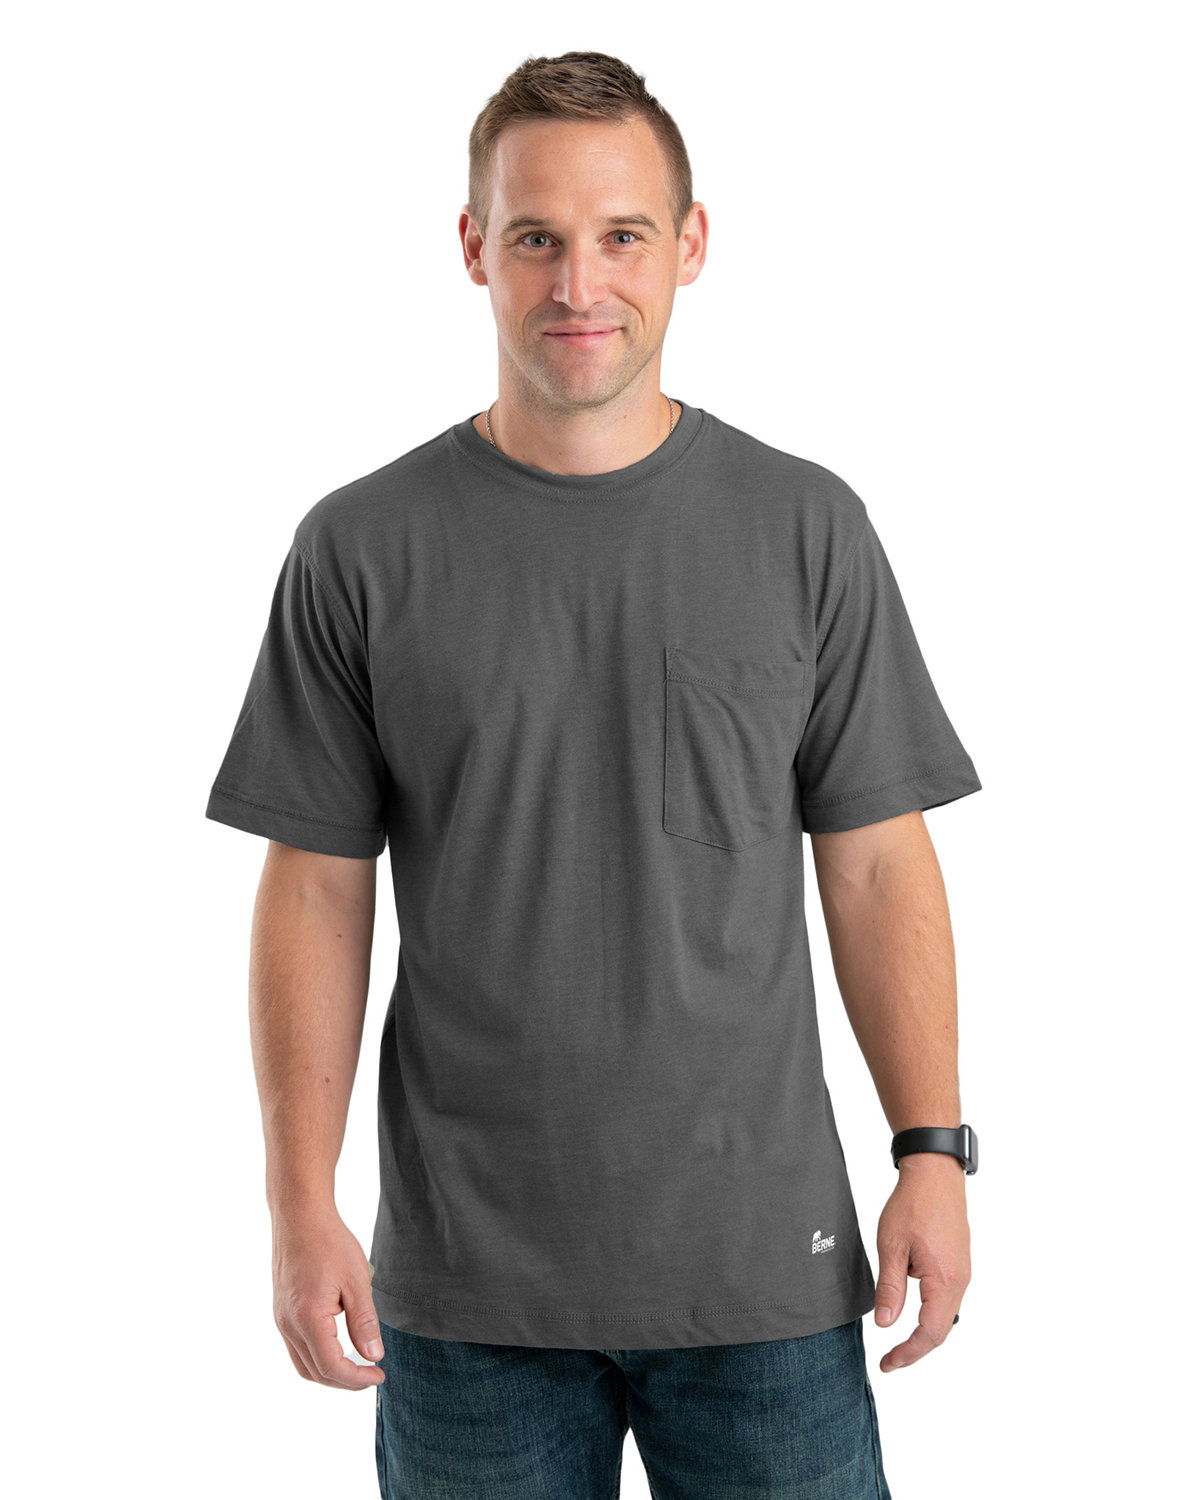 Berne Men's Tall Lightweight Performance T-Shirt SLATE 